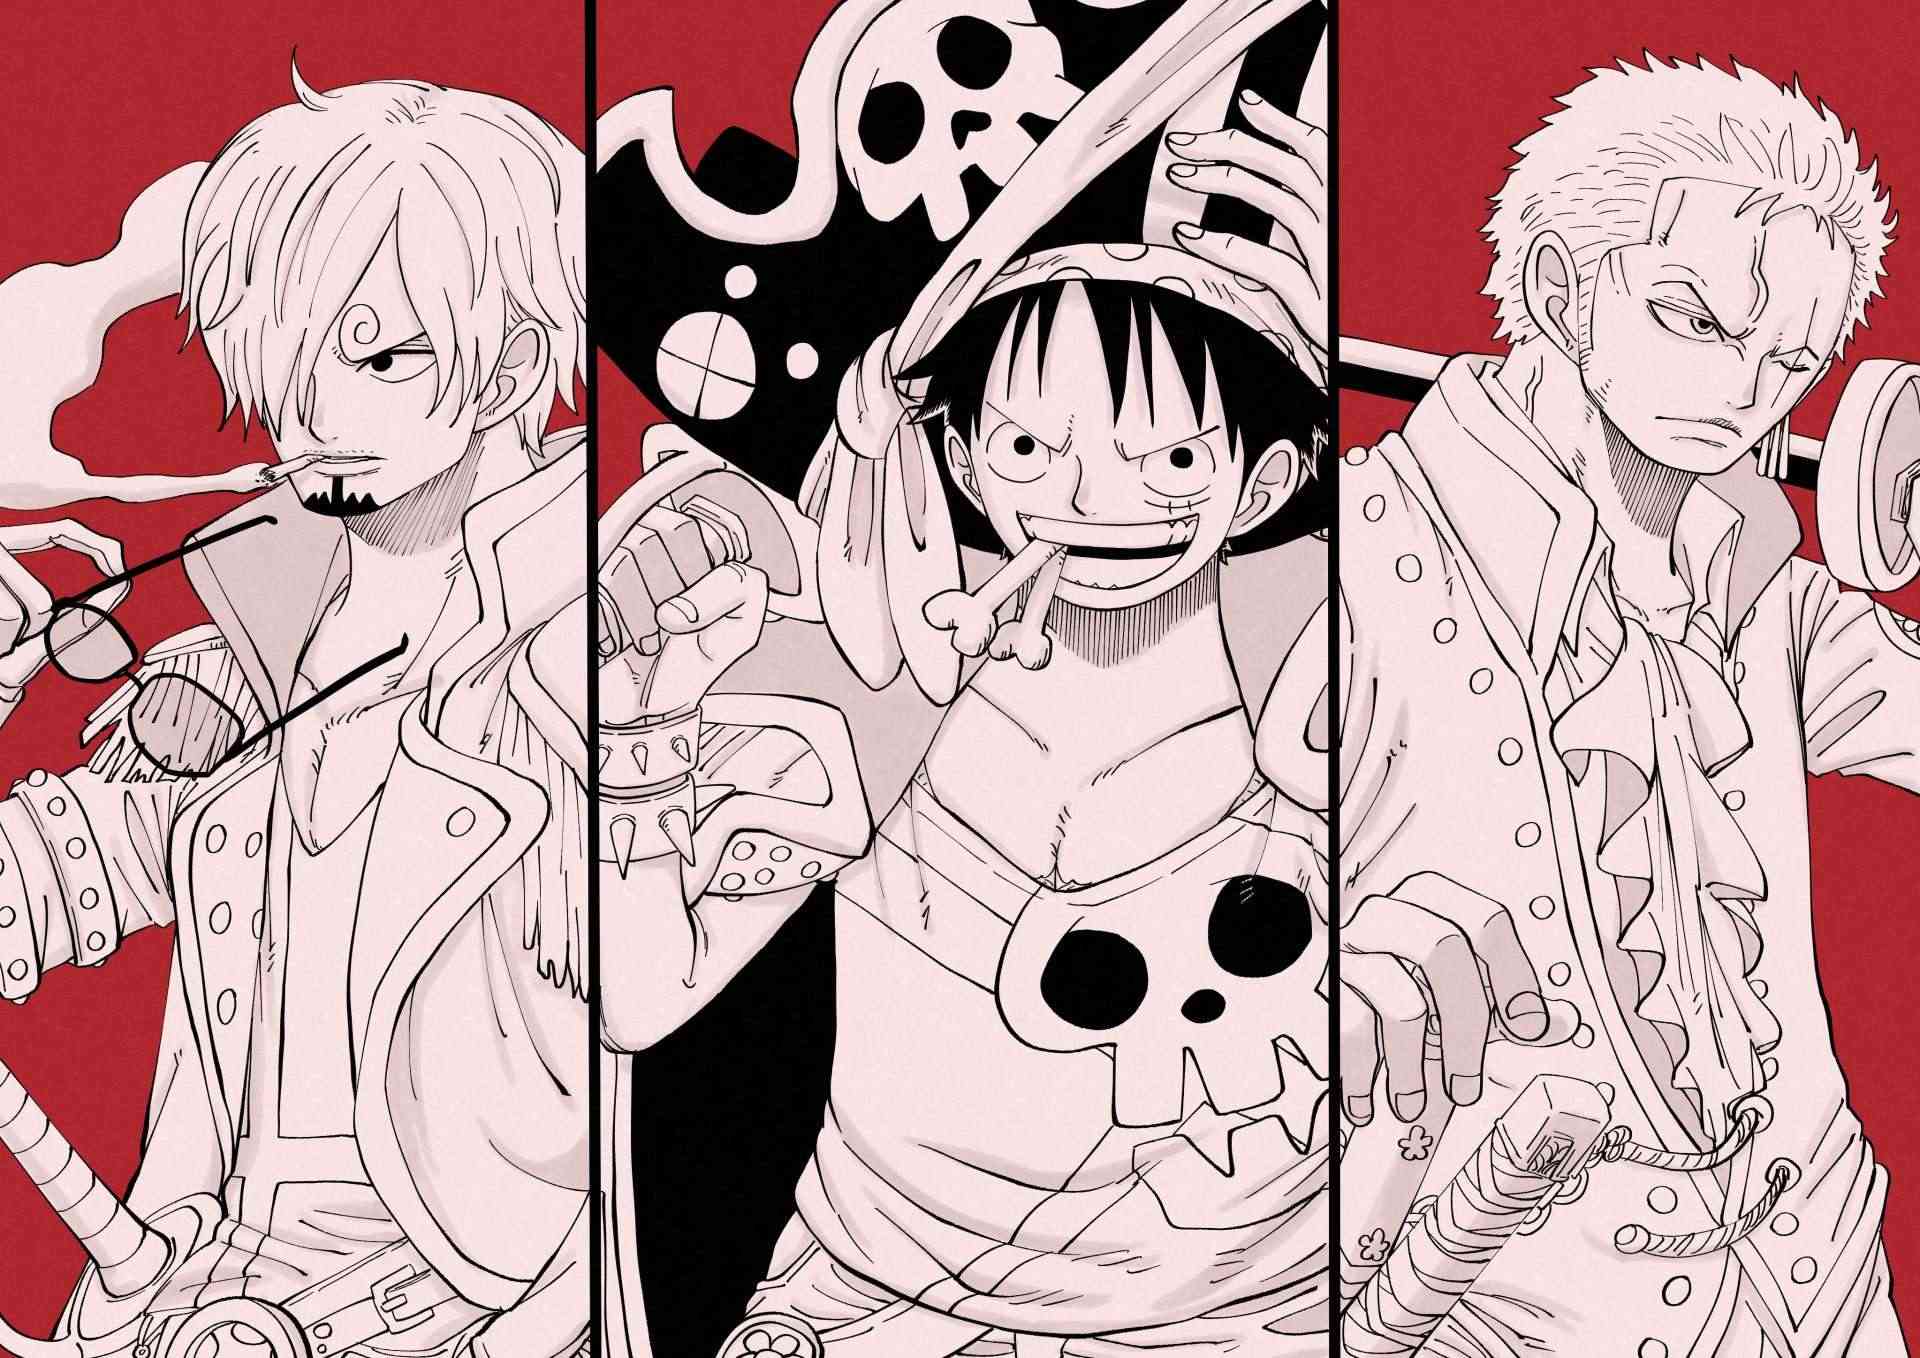 Sanji: Hãy cùng khám phá hành trình phiêu lưu của Sanji - một trong những nhân vật đầy cá tính và có kỹ năng đặc biệt trong bộ truyện One Piece. Ảnh liên quan sẽ đưa bạn đến thế giới đầy màu sắc và kịch tính của anh chàng tài hoa này.